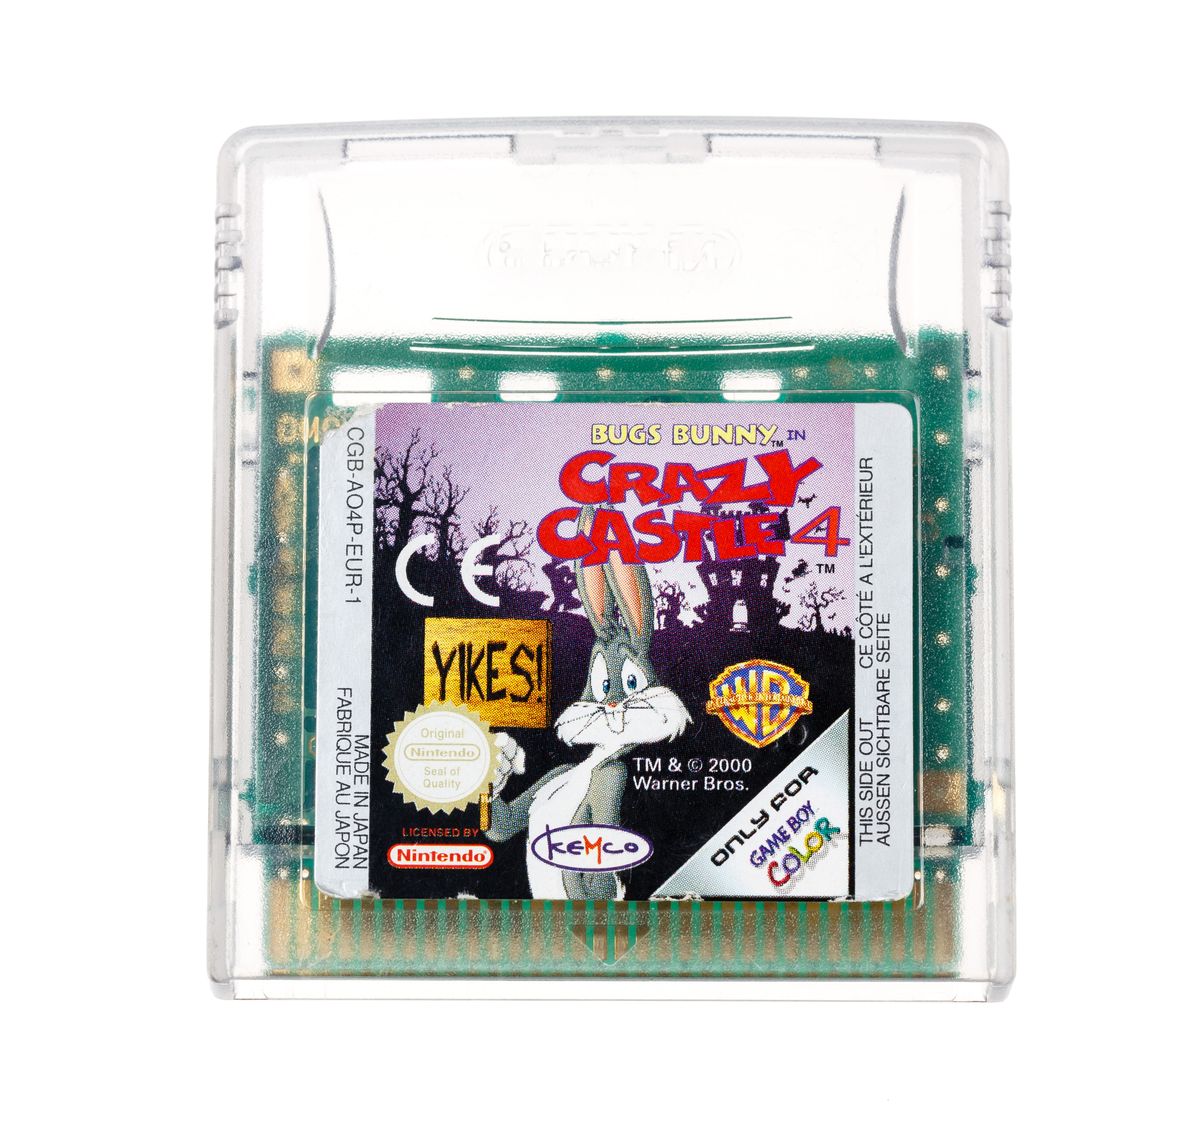 Bugs Bunny Crazy Castle 4 | Gameboy Color Games | RetroNintendoKopen.nl